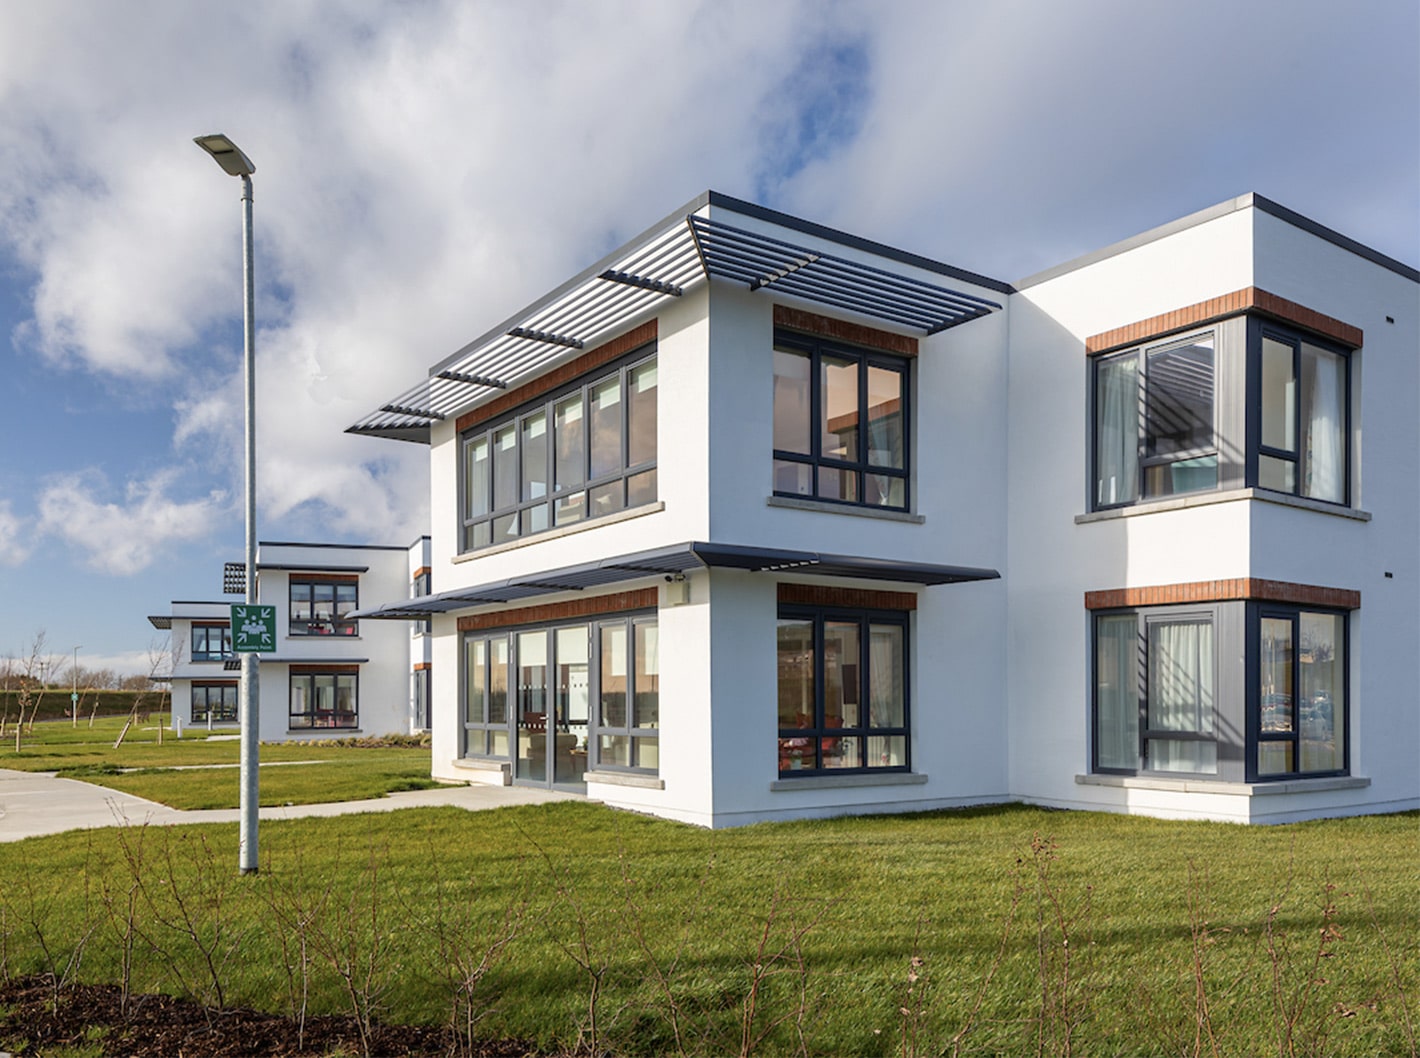 影響力投資 — 愛爾蘭公共房屋和療養院的投資潛力